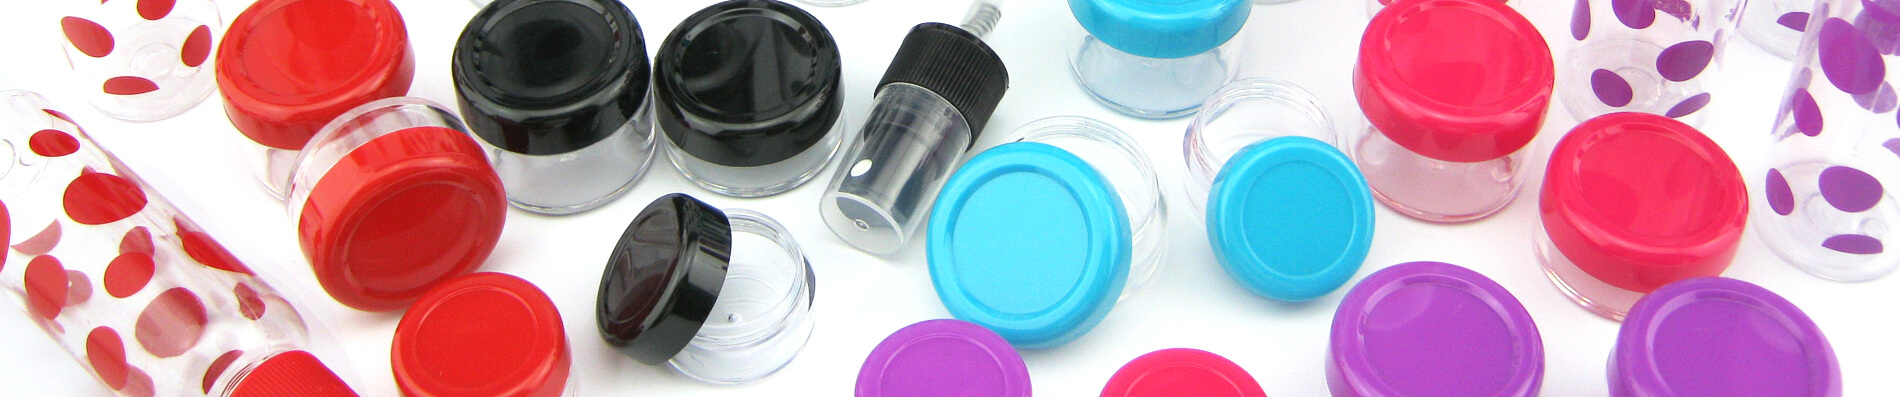 Plastic Cosmetic Cream Jars